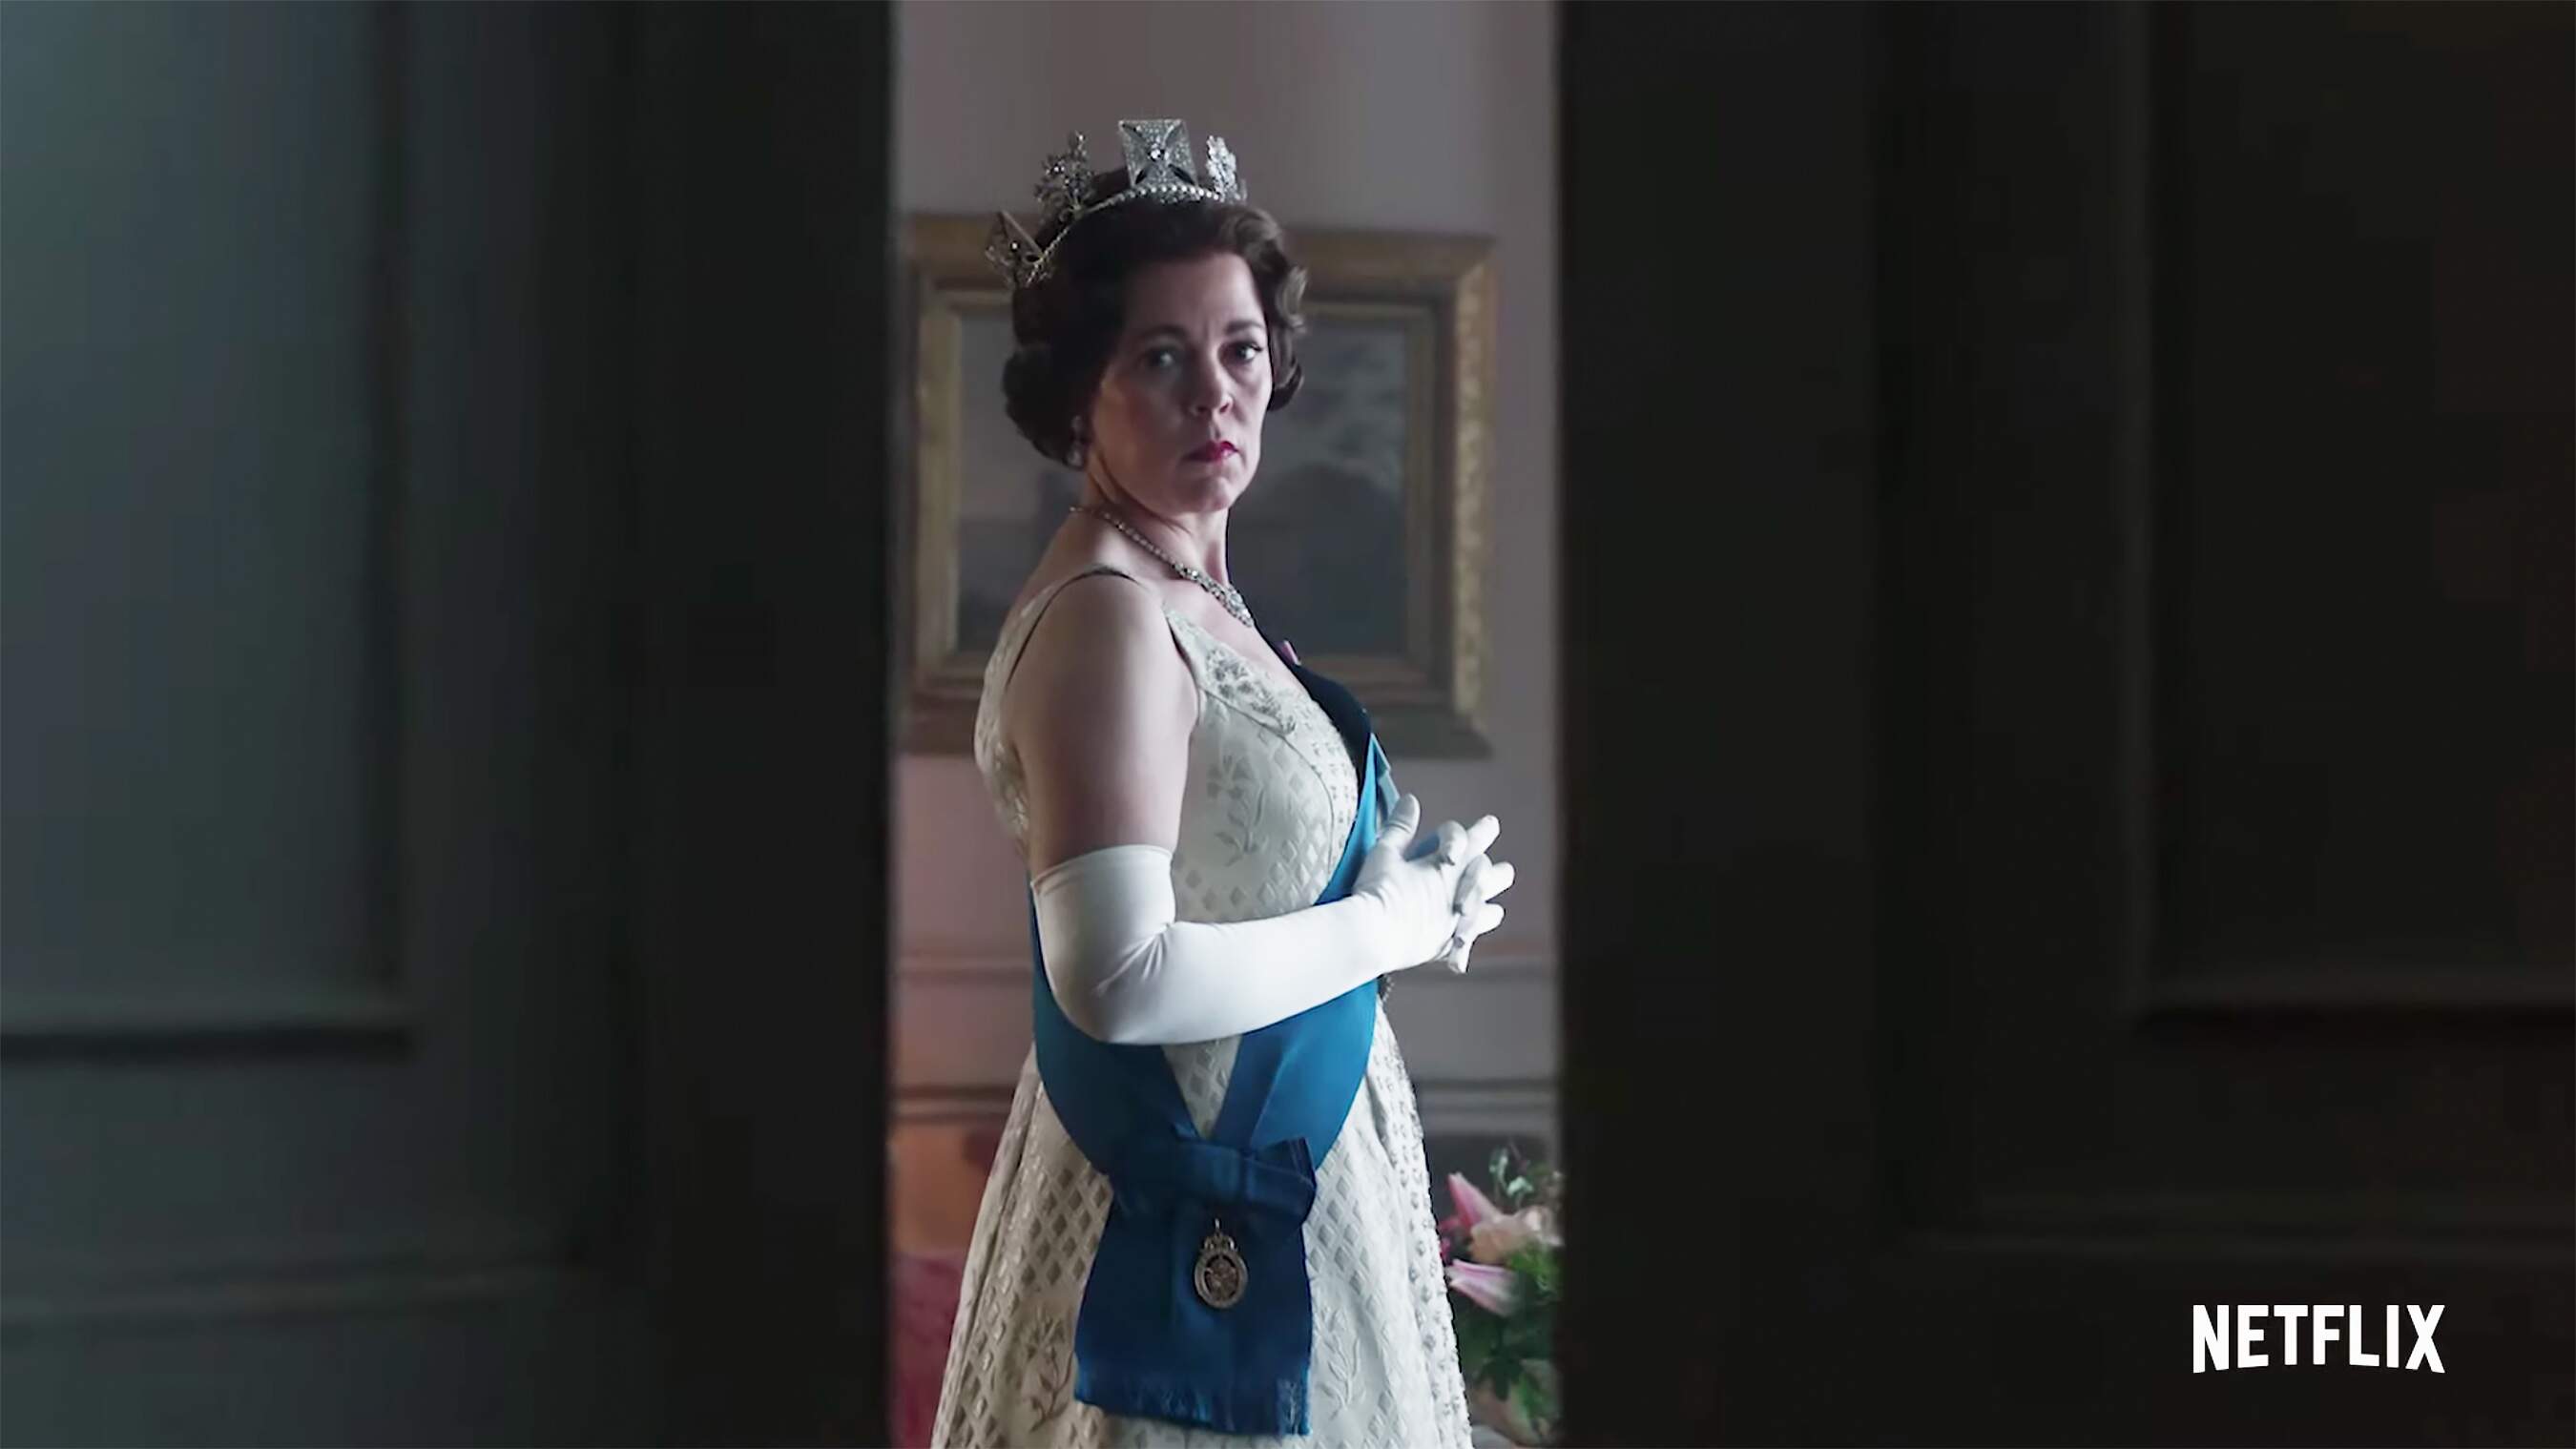 Novo teaser de “The Crown” mostra a mudança da Rainha Elizabeth II